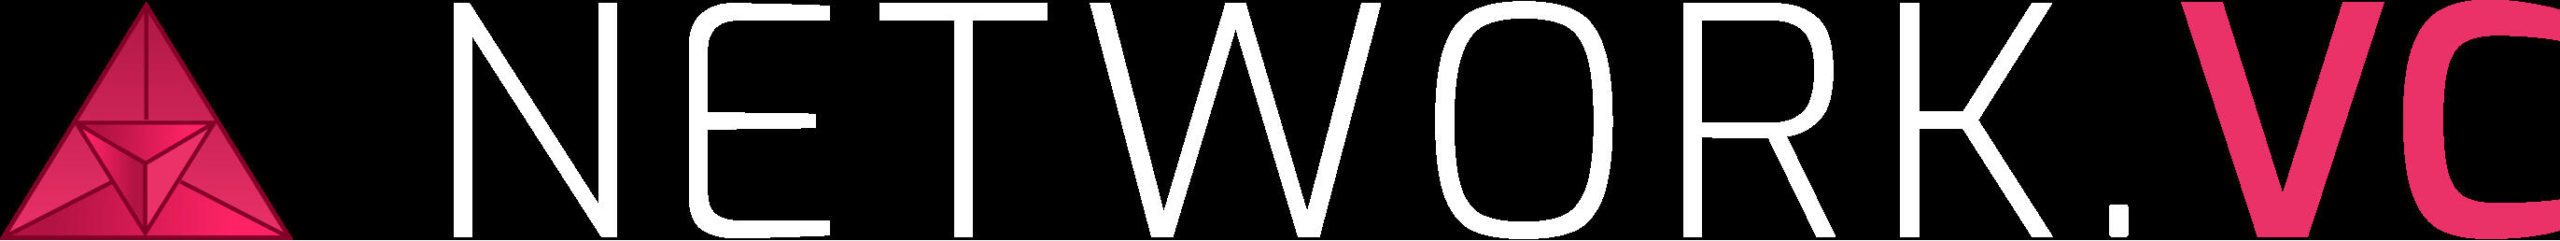 network_vc_logo